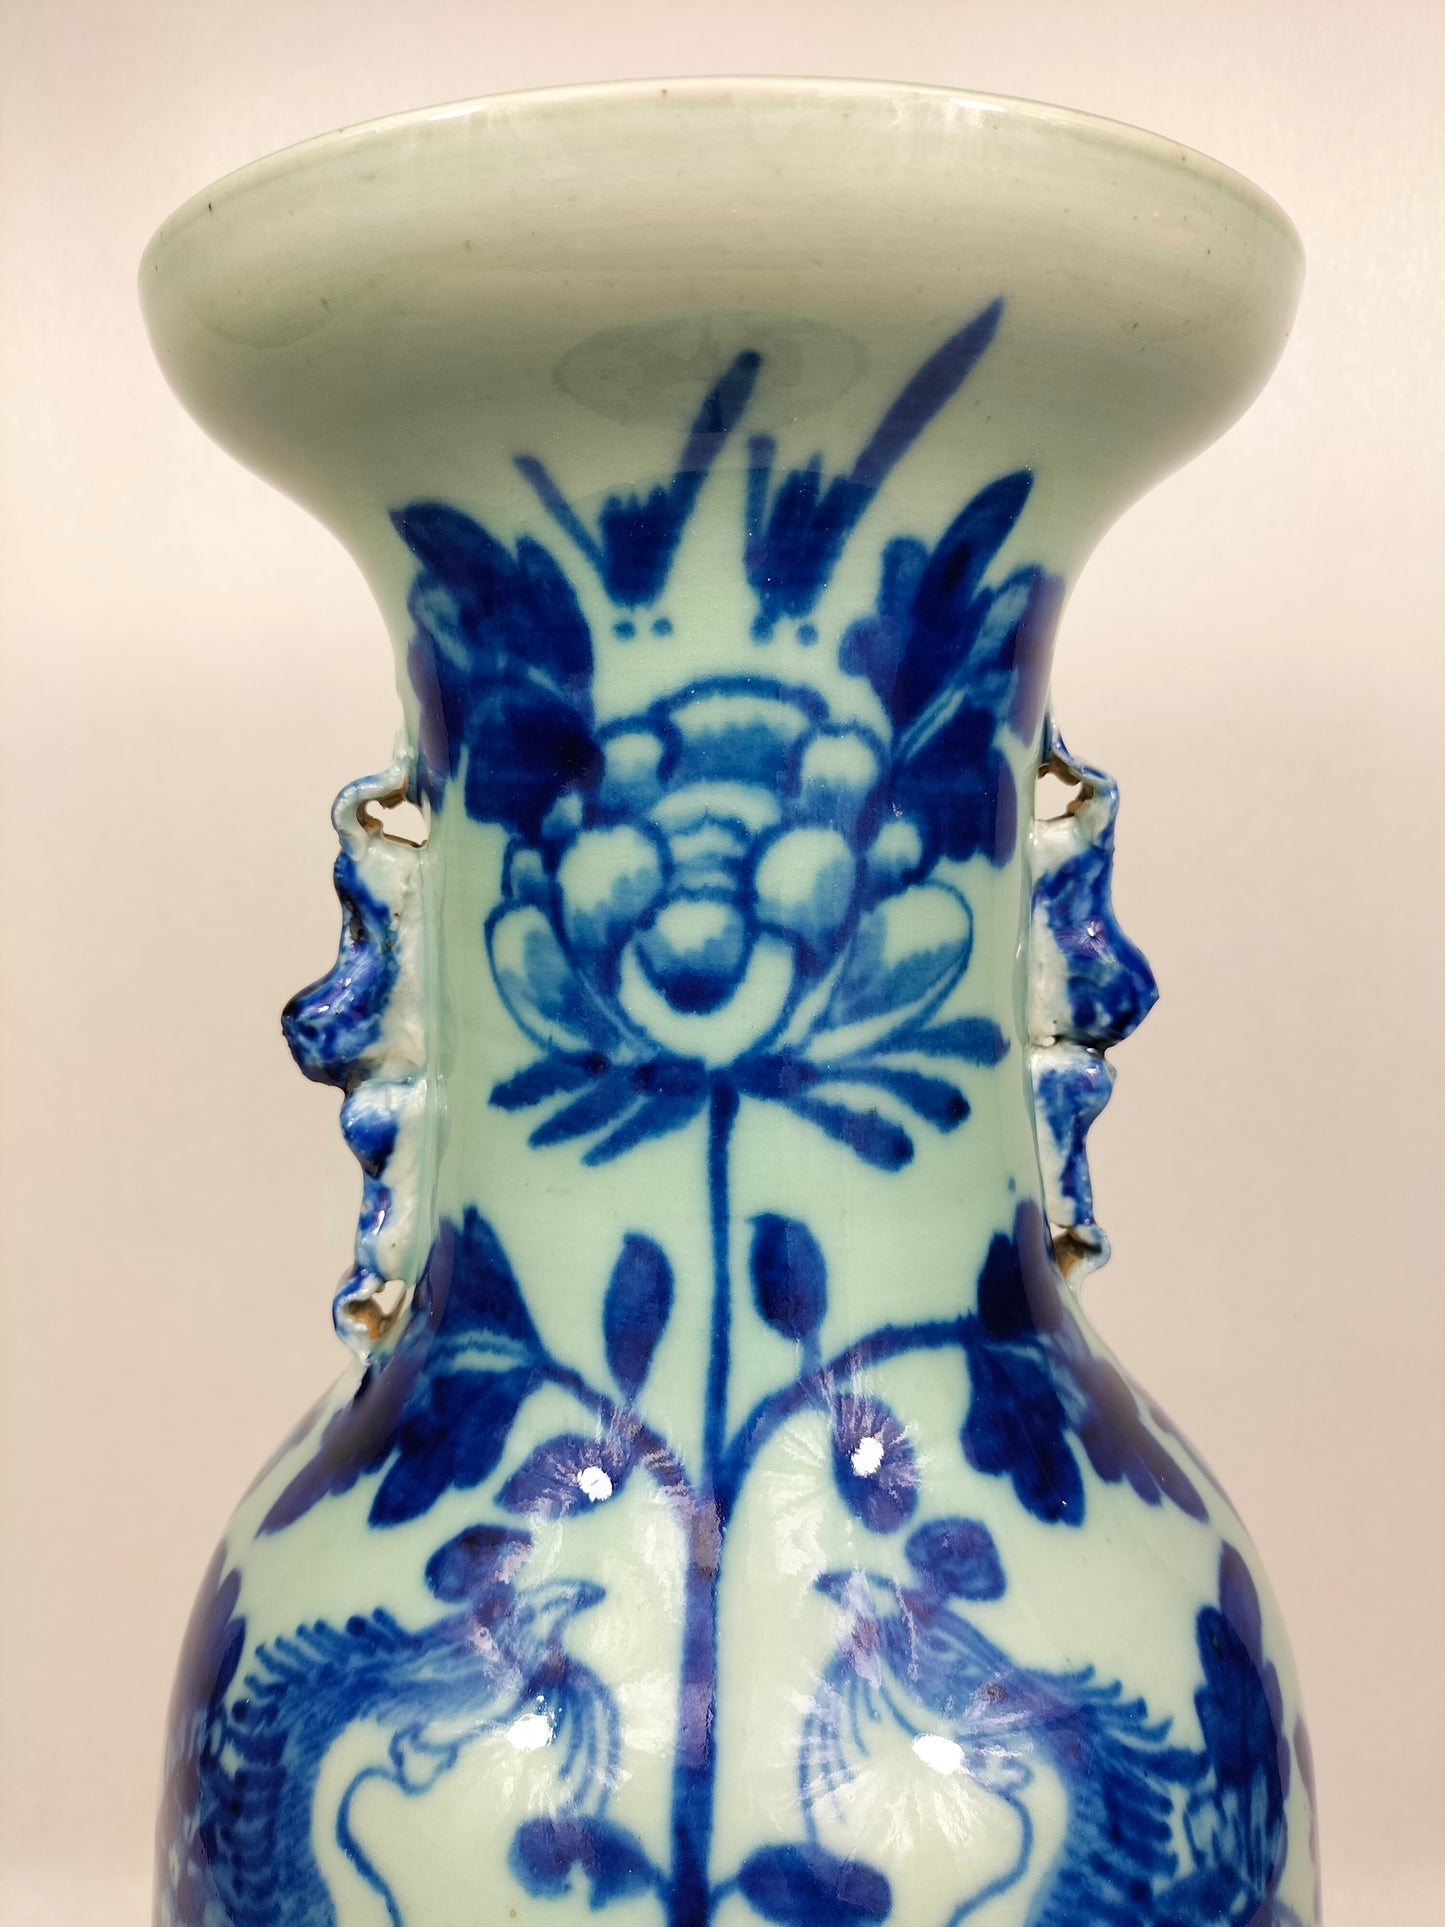 Chiếc bình lớn màu men ngọc cổ của Trung Quốc được trang trí bằng chim và hoa // Nhà Thanh - thế kỷ 19